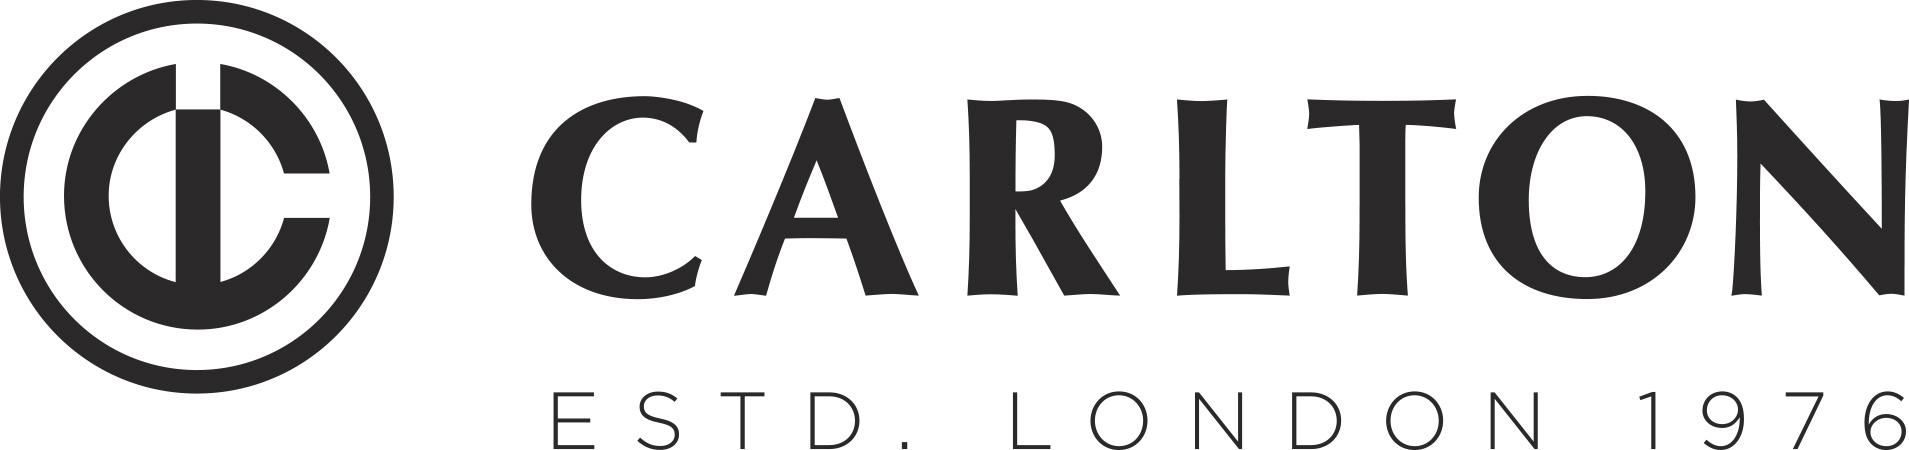 Carlton Logo - carlton-logo - Hamelin.dk